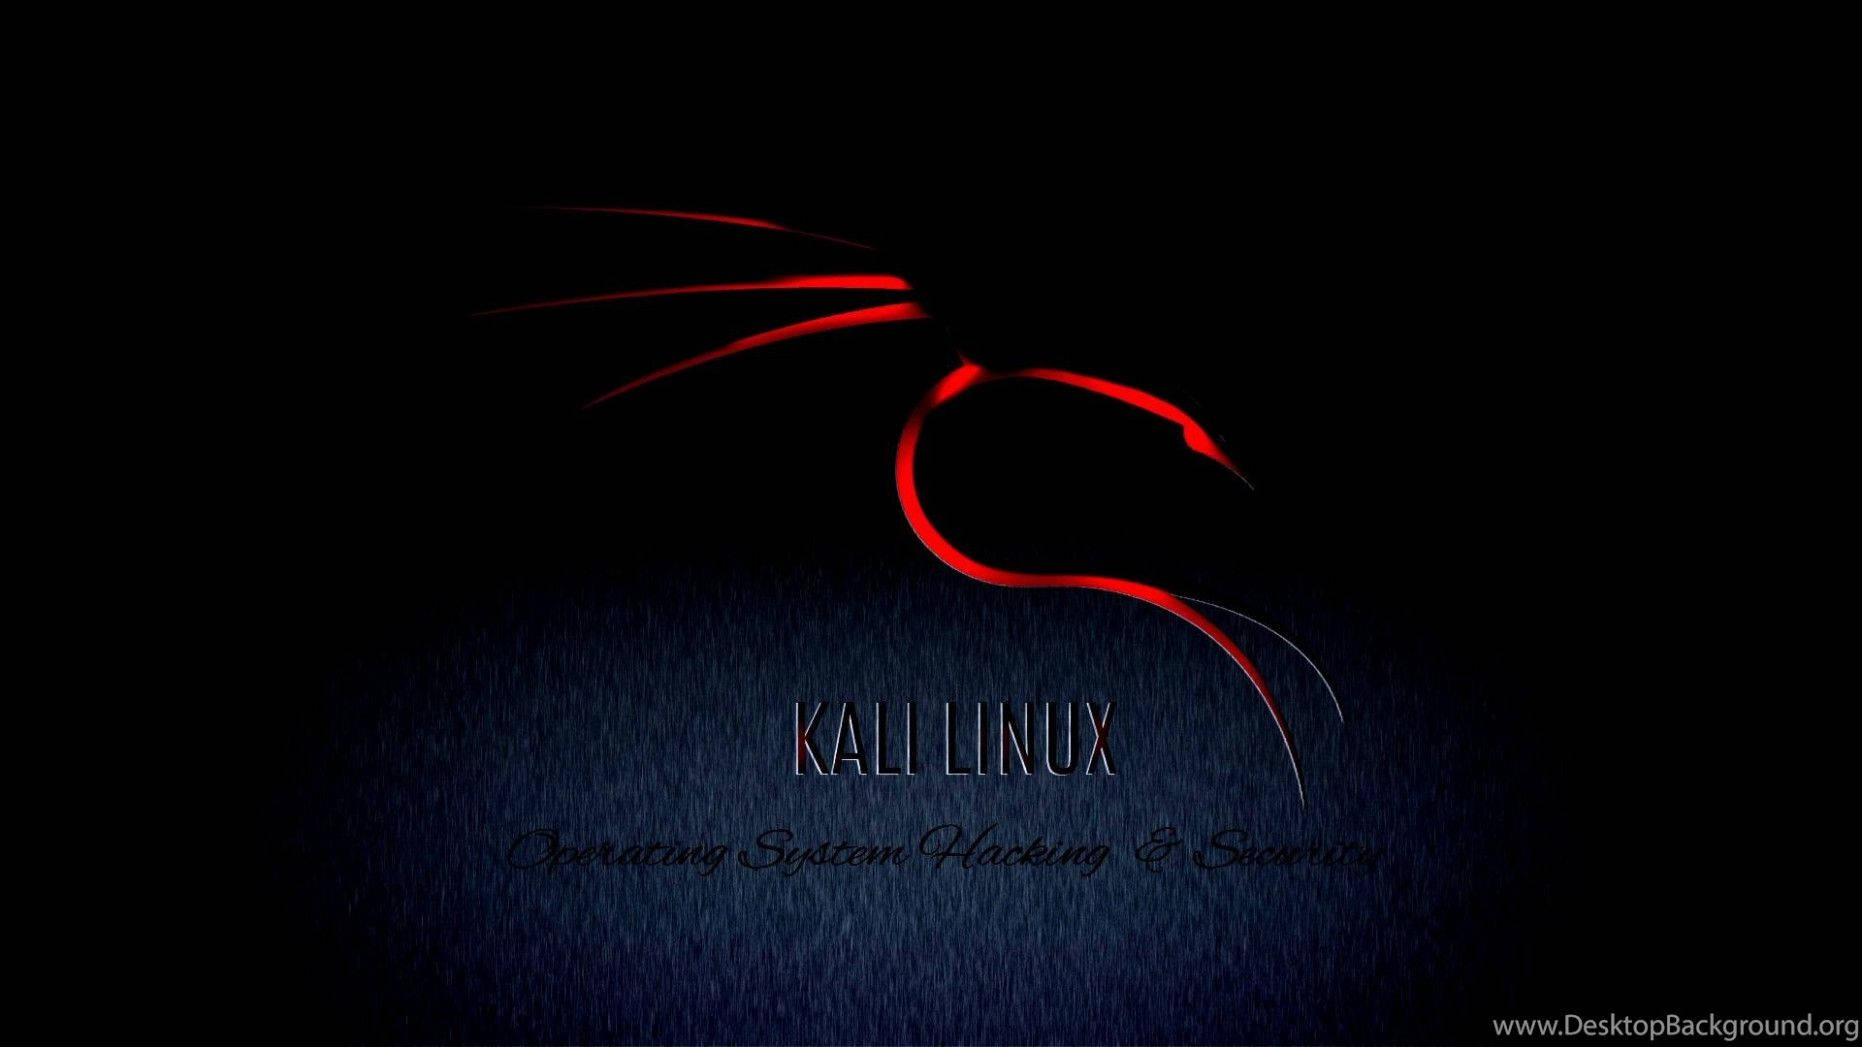 Kali Linux Blazing Dragon